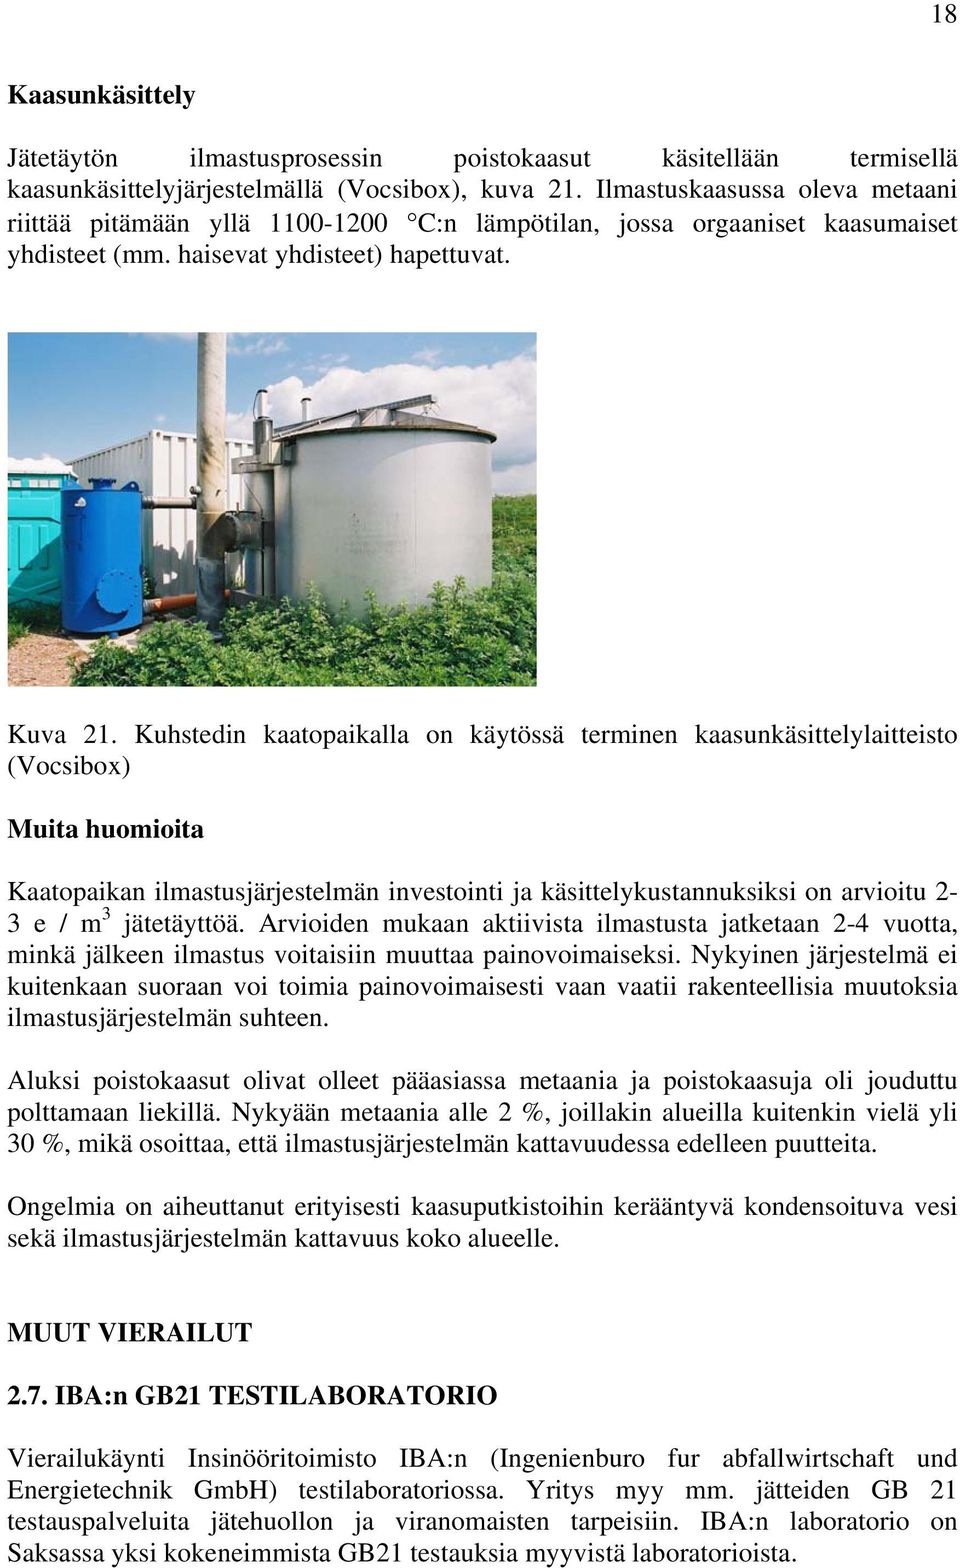 Kuhstedin kaatopaikalla on käytössä terminen kaasunkäsittelylaitteisto (Vocsibox) Muita huomioita Kaatopaikan ilmastusjärjestelmän investointi ja käsittelykustannuksiksi on arvioitu 2-3 e / m 3